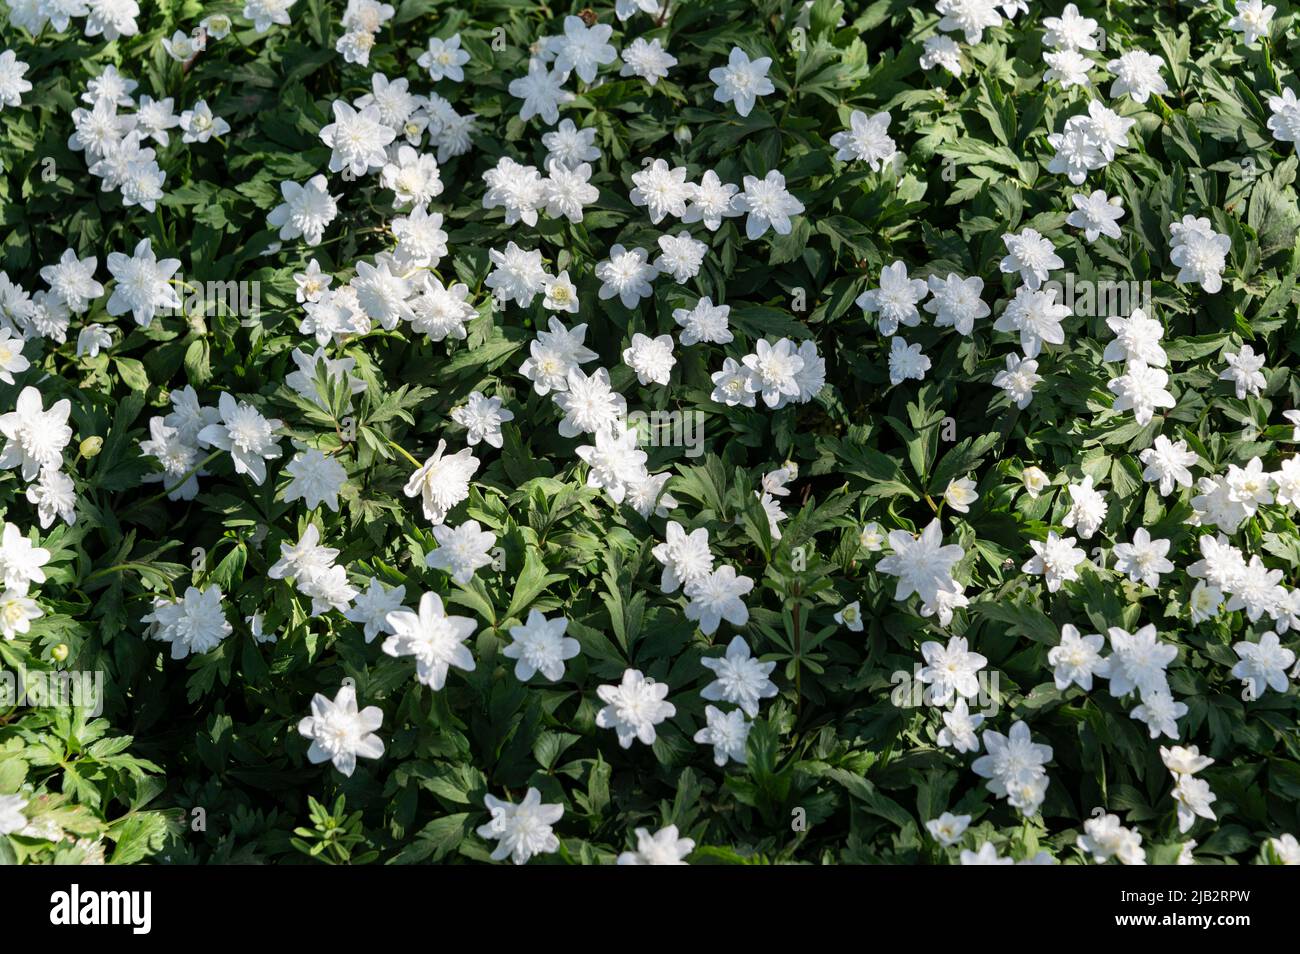 Anemone nemorosa, flore,pleno, Ranunculaceae. Flores blancas de primavera. Foto de stock